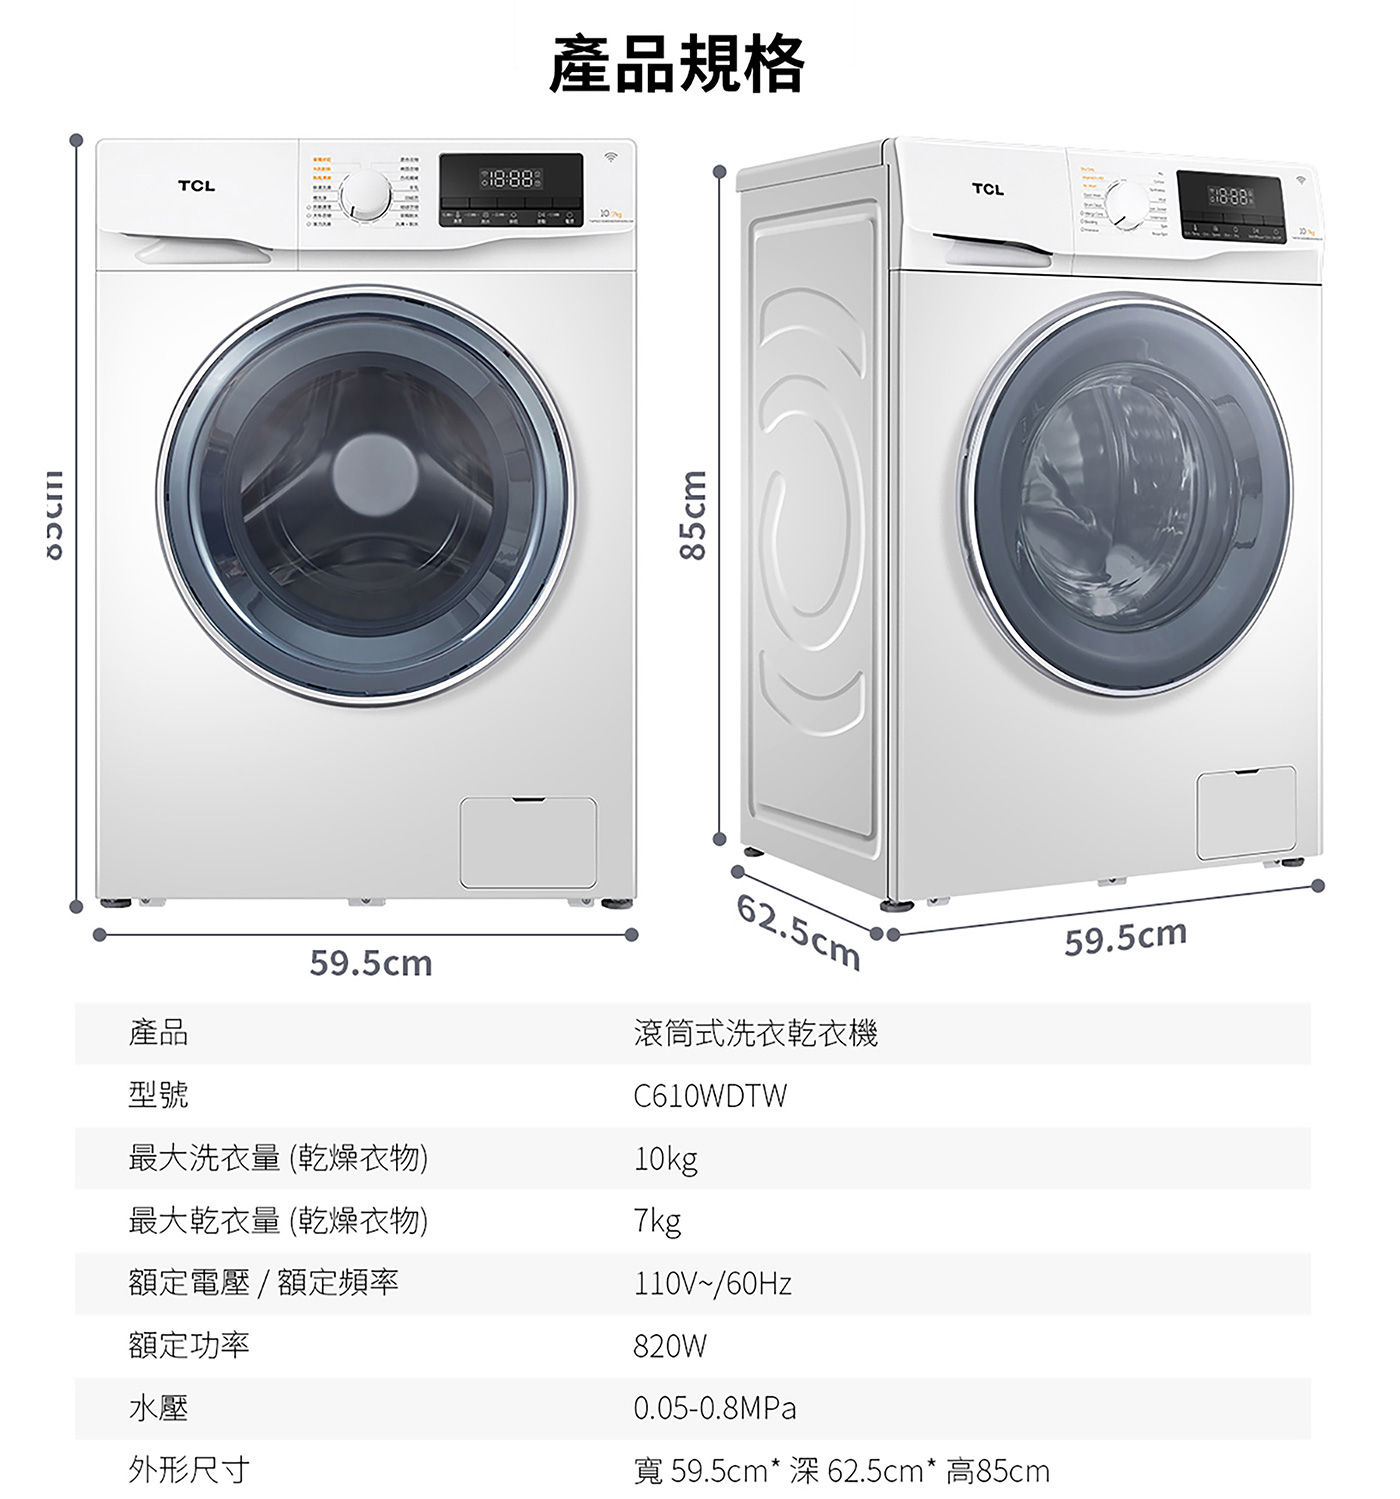 TCL 蒸洗脫烘變頻滾筒洗衣機 10/7公斤 輕巧機身設計空間靈活運用